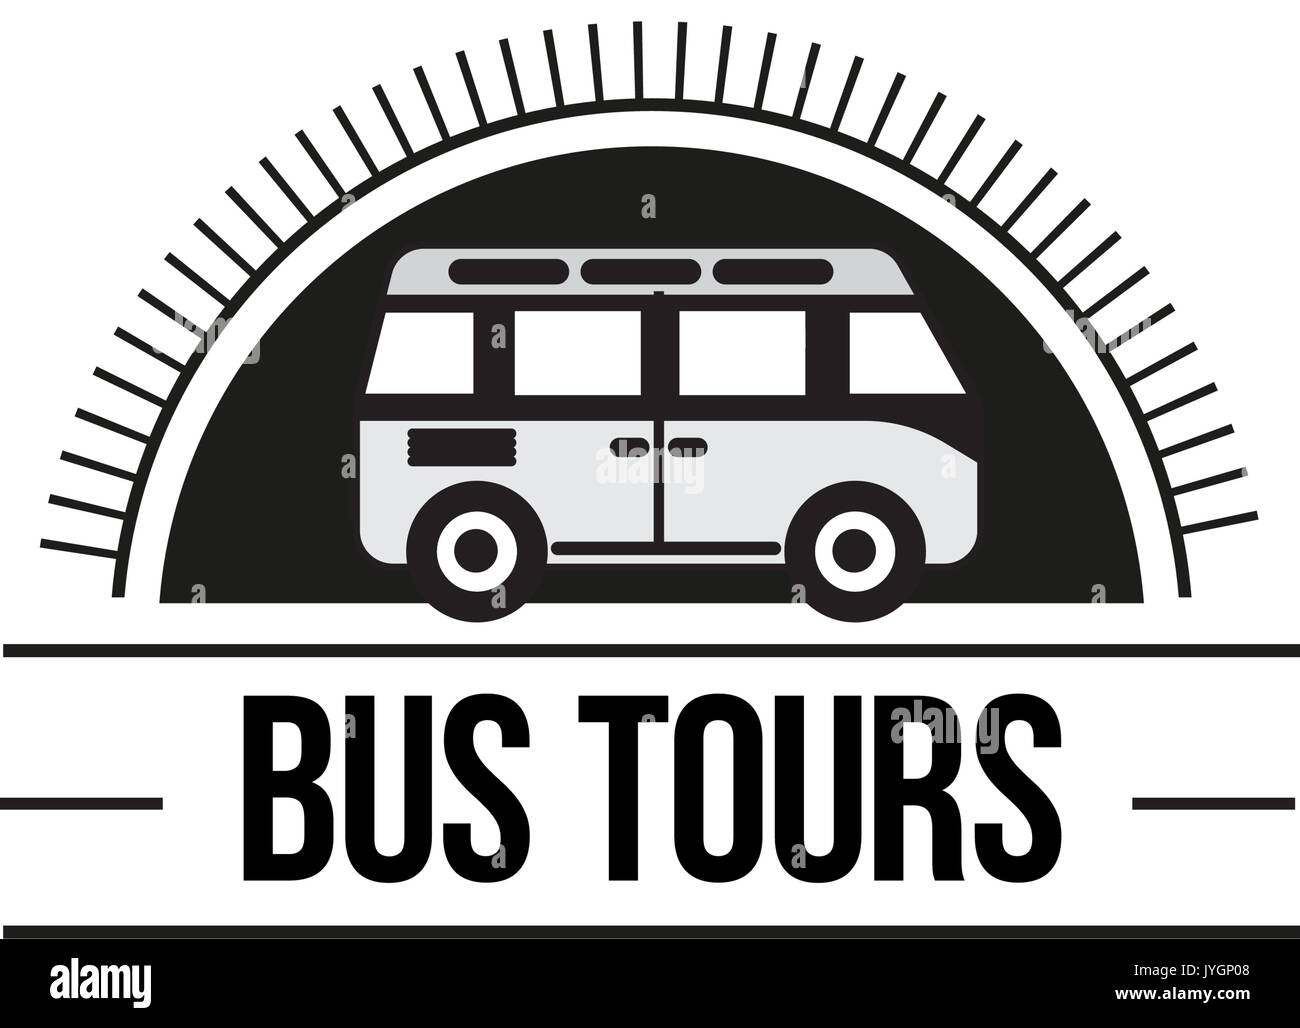 The bus trip logo Stock Vector